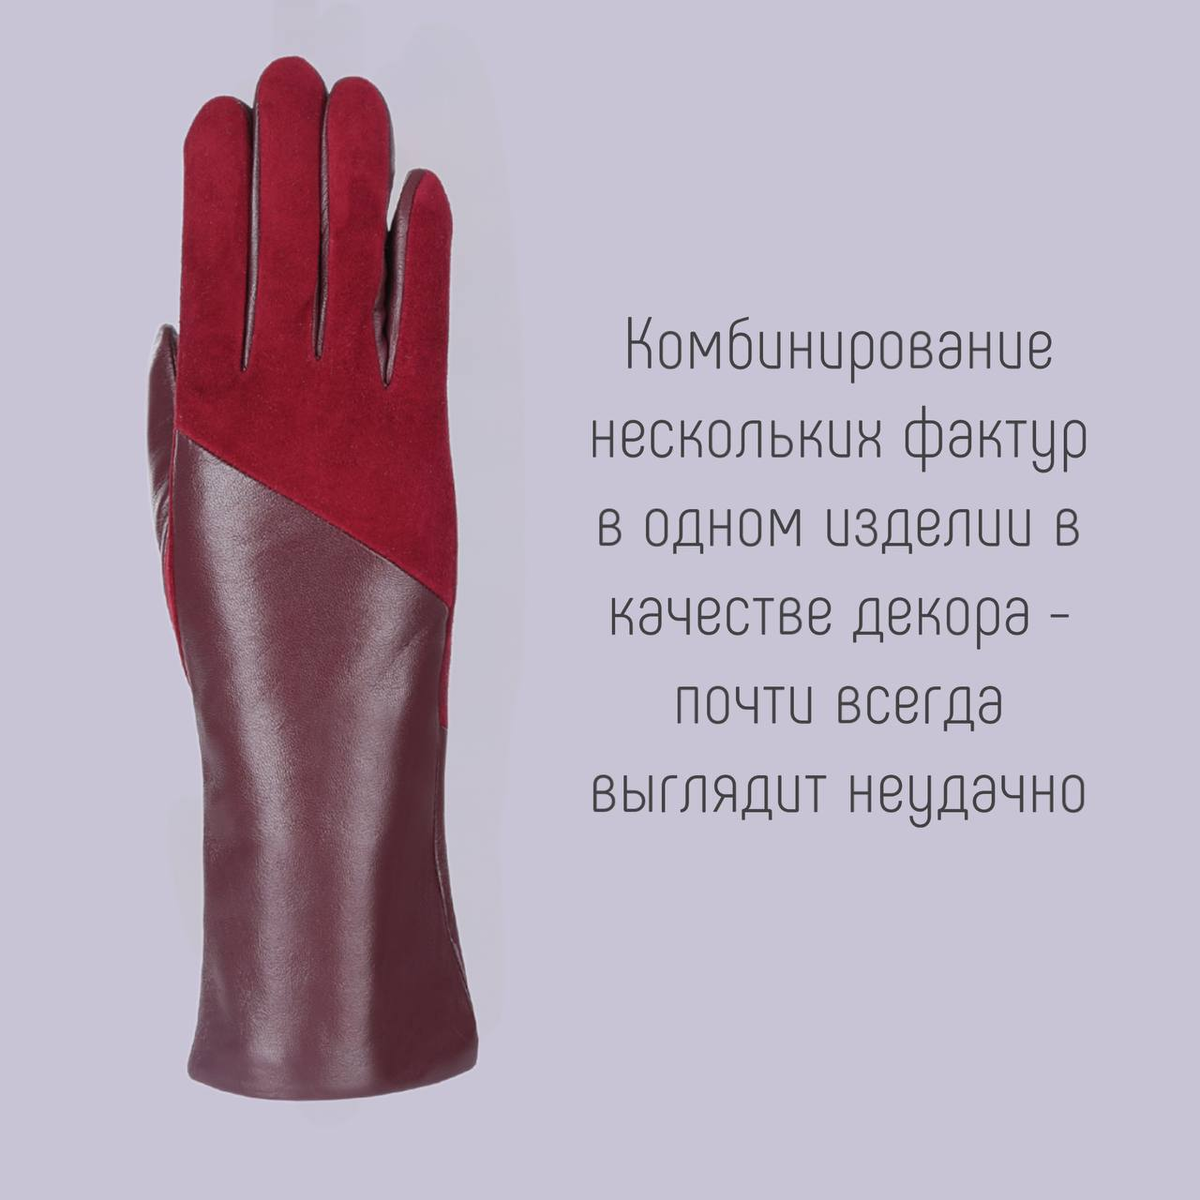 Женские перчатки: какие лучше не покупать на новый сезон